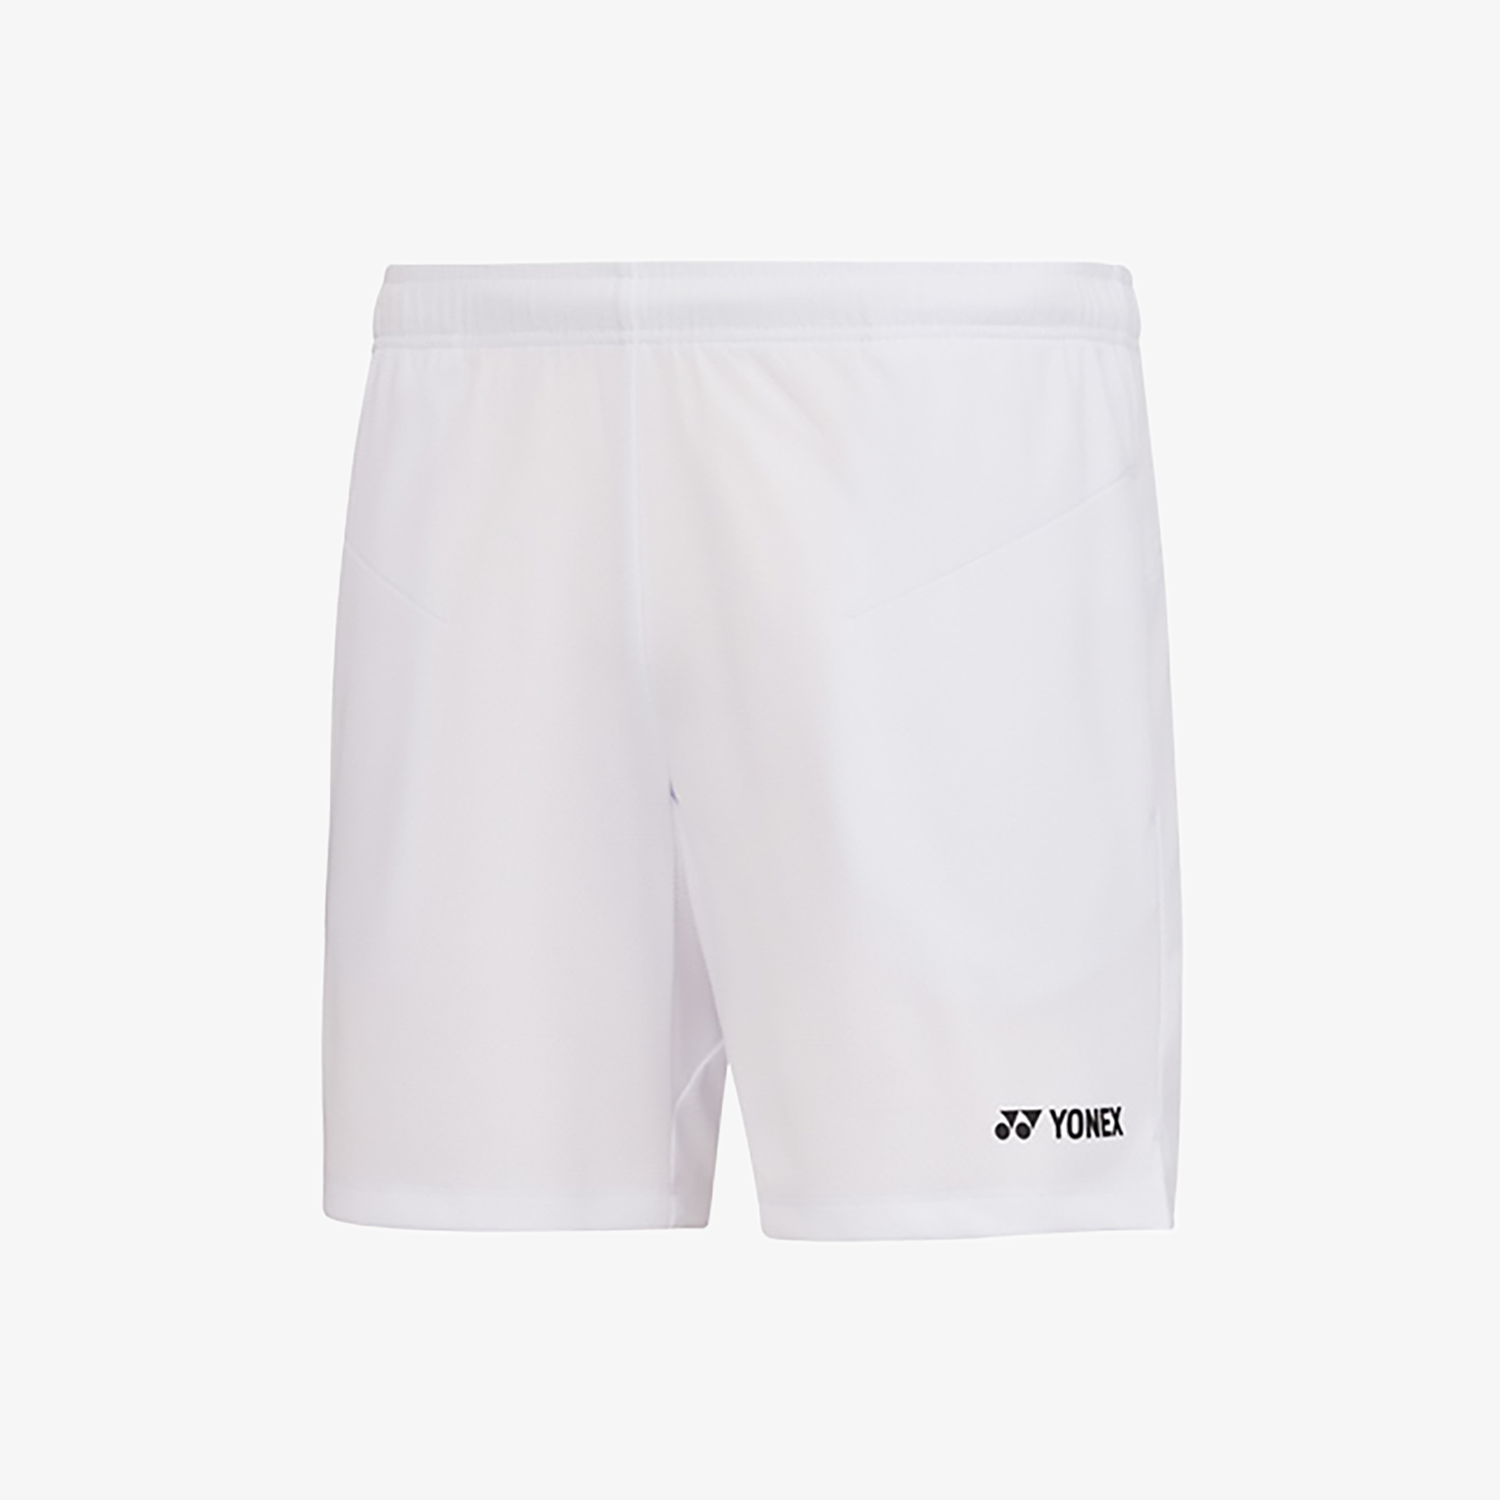 Yonex Women's Shorts 231PH002F (White)